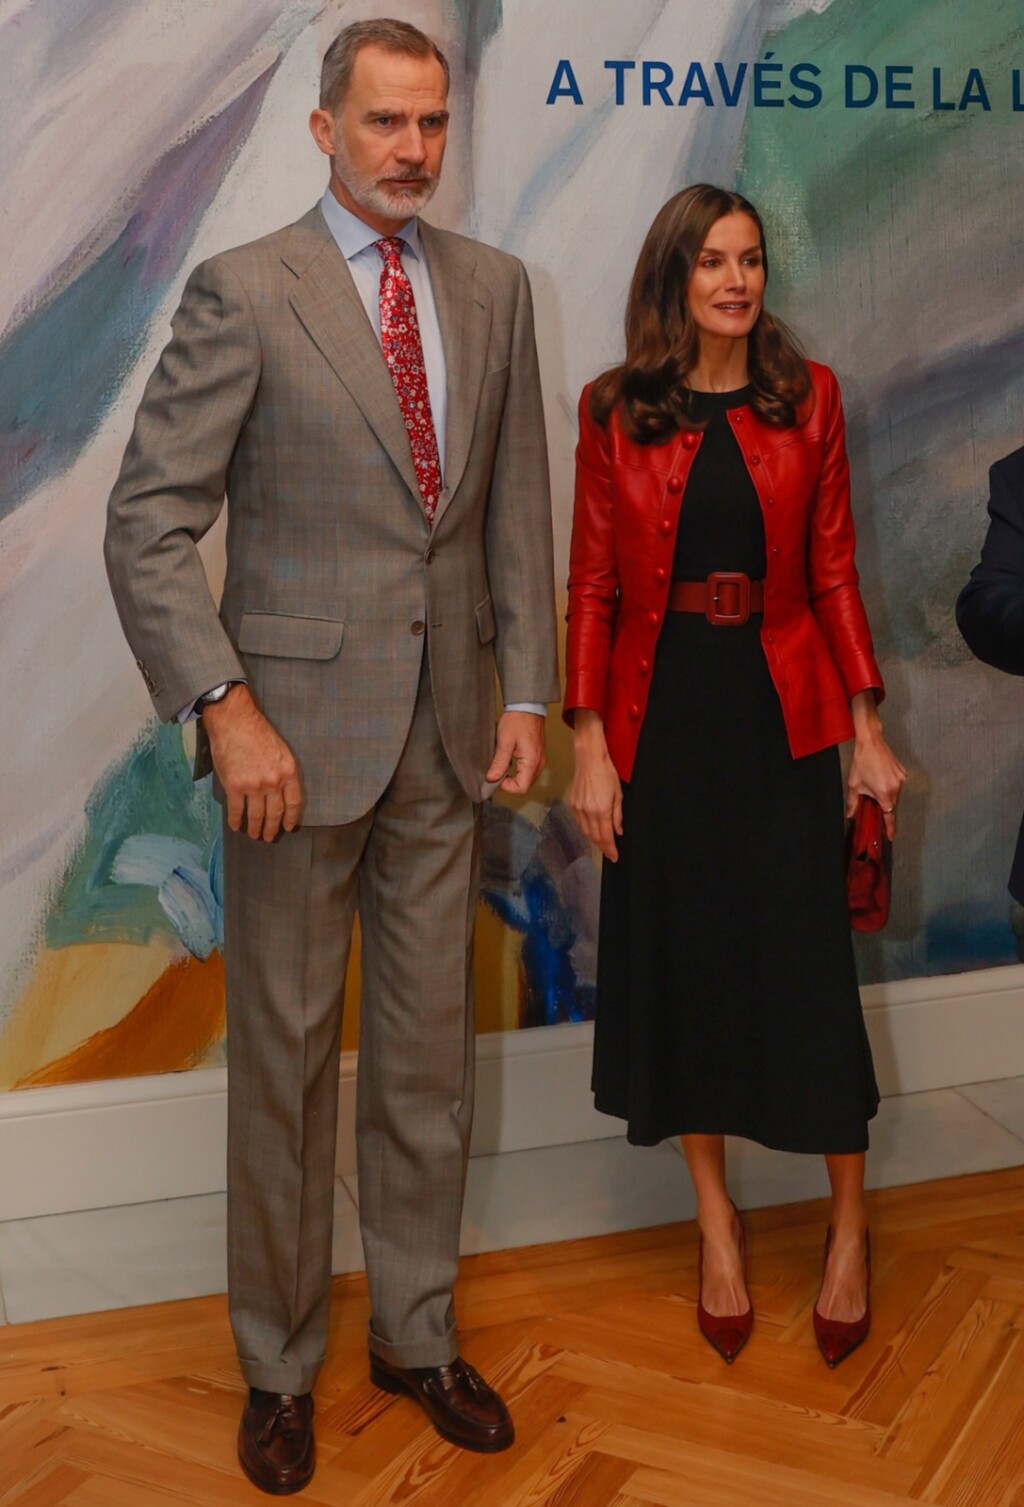 Kralj Felipe VI. i kraljica Letizia na otvaranju izložbe u Kraljevskoj palači u Madridu